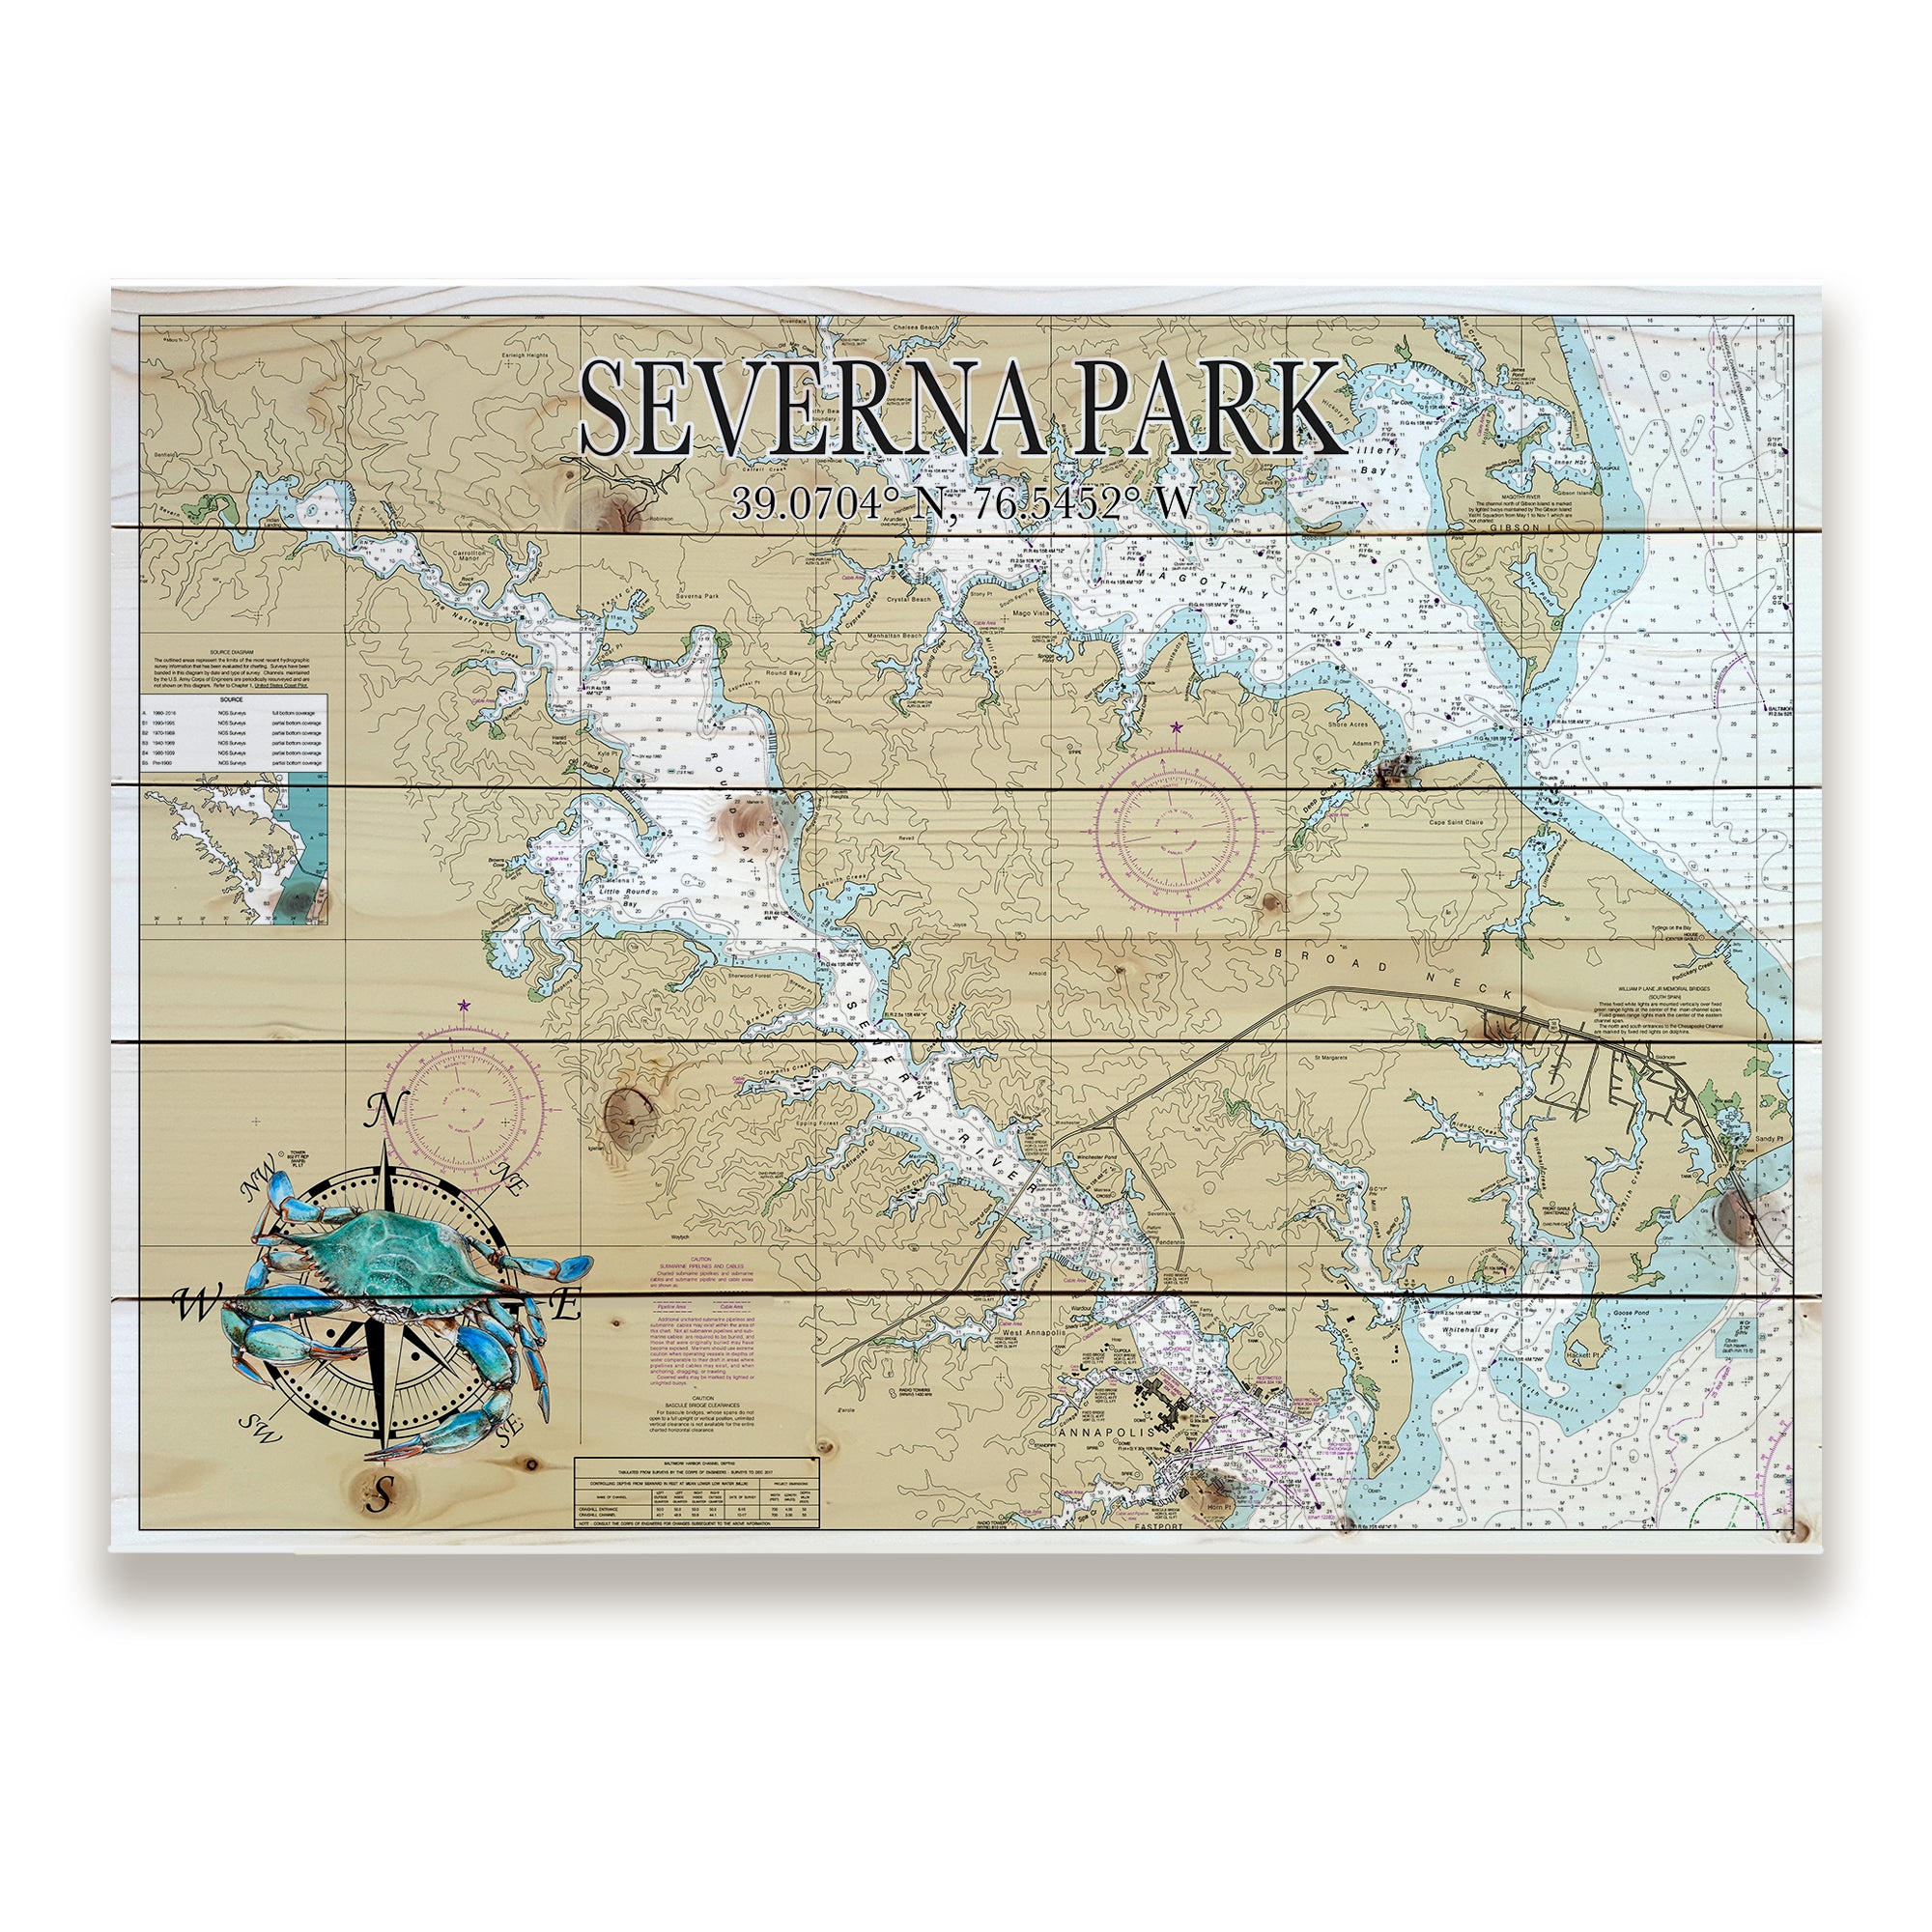 Severna Park, MD Pallet Map